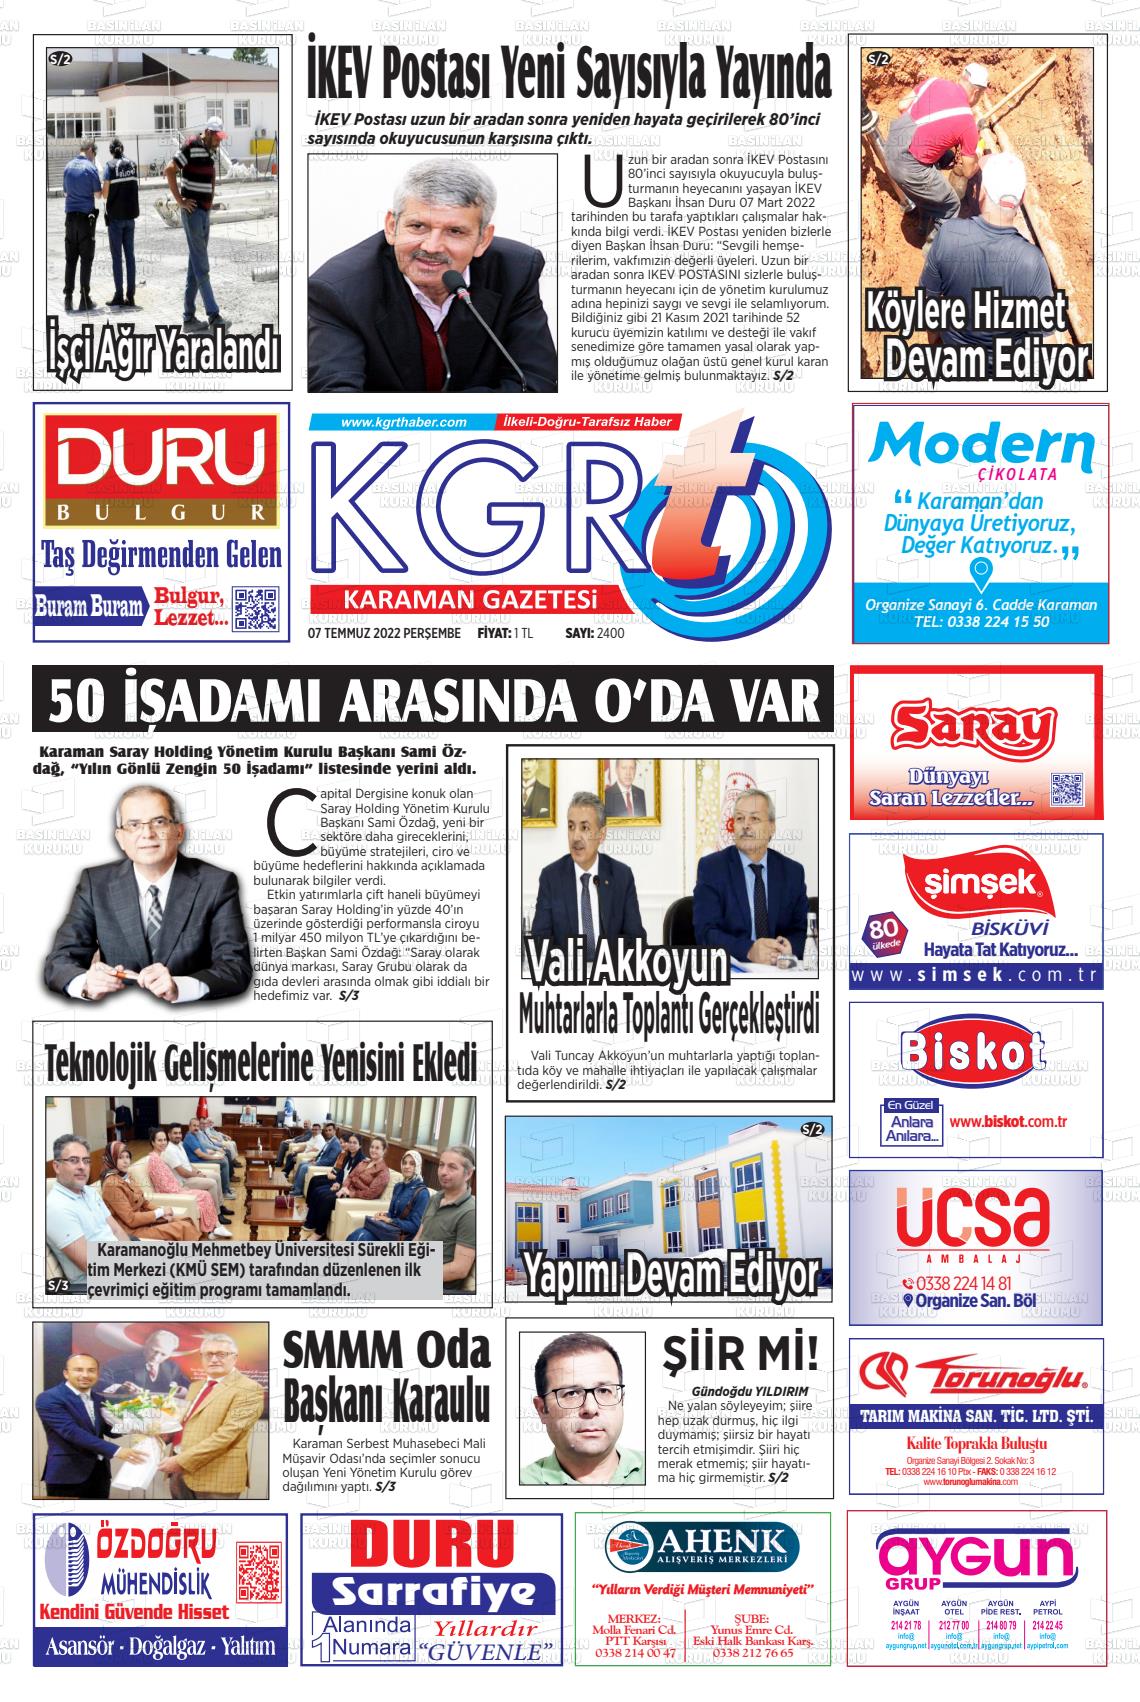 07 Temmuz 2022 Kgrt Karaman Gazete Manşeti